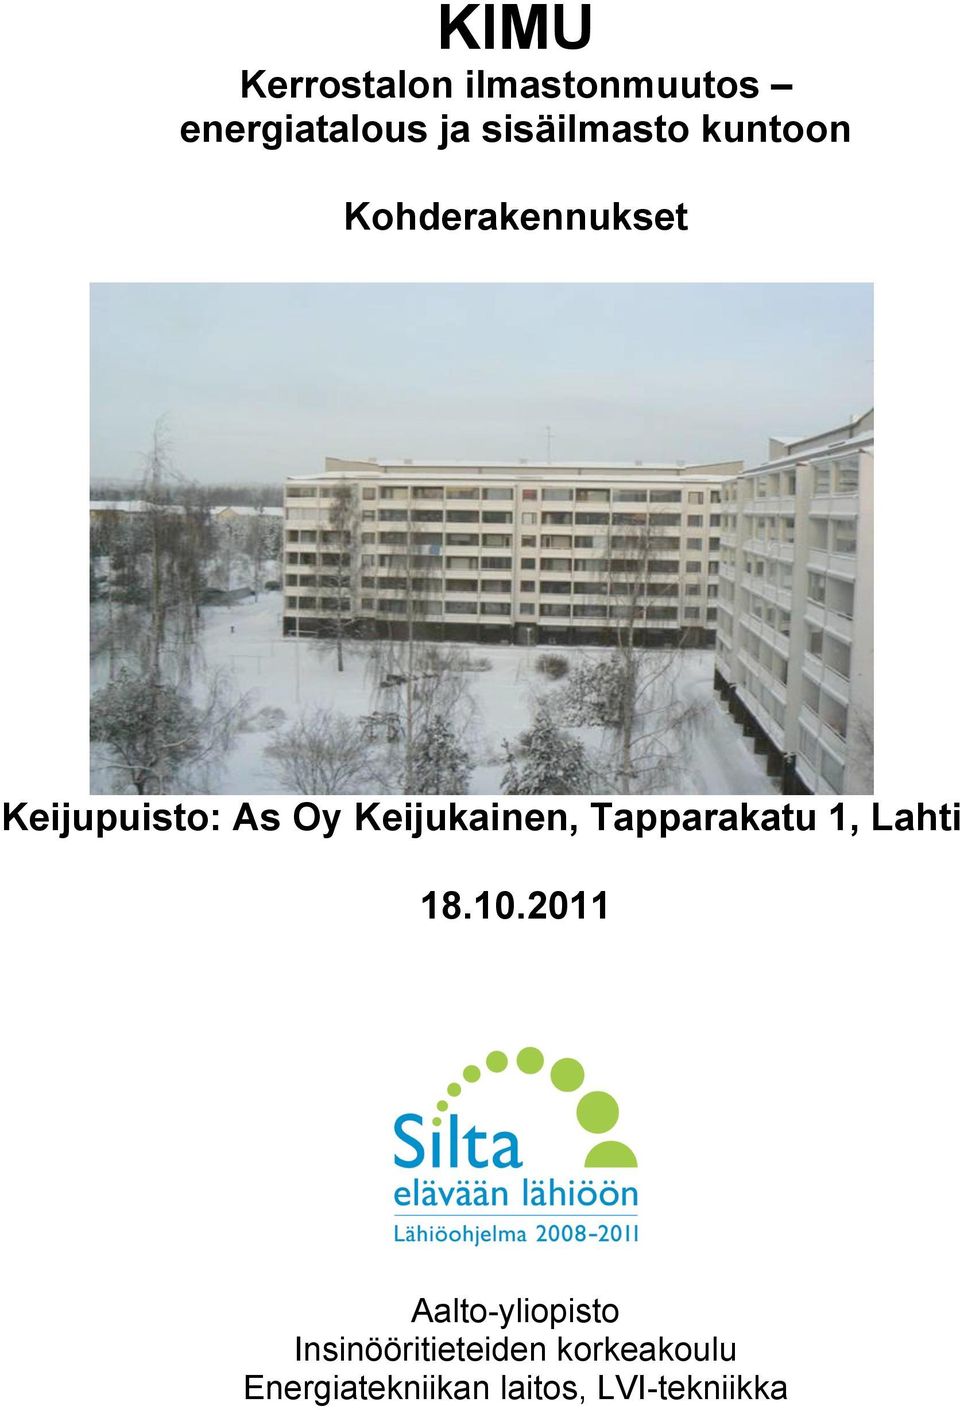 Keijukainen, Tapparakatu 1, Lahti 18.10.